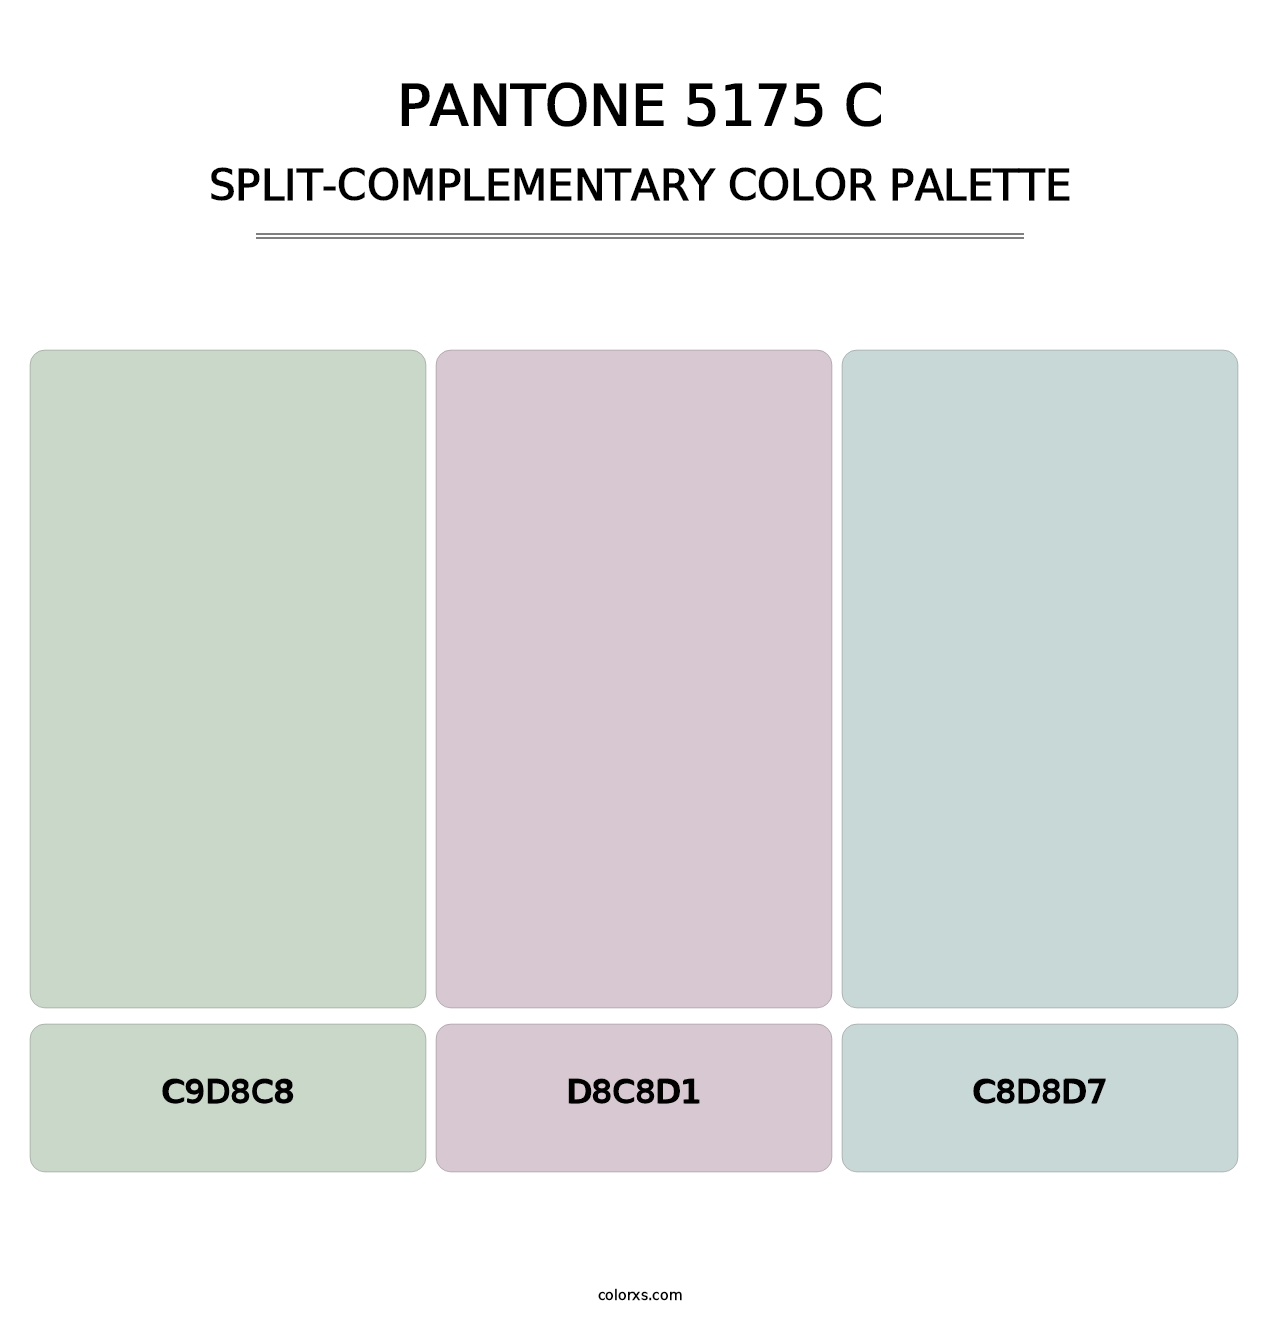 PANTONE 5175 C - Split-Complementary Color Palette